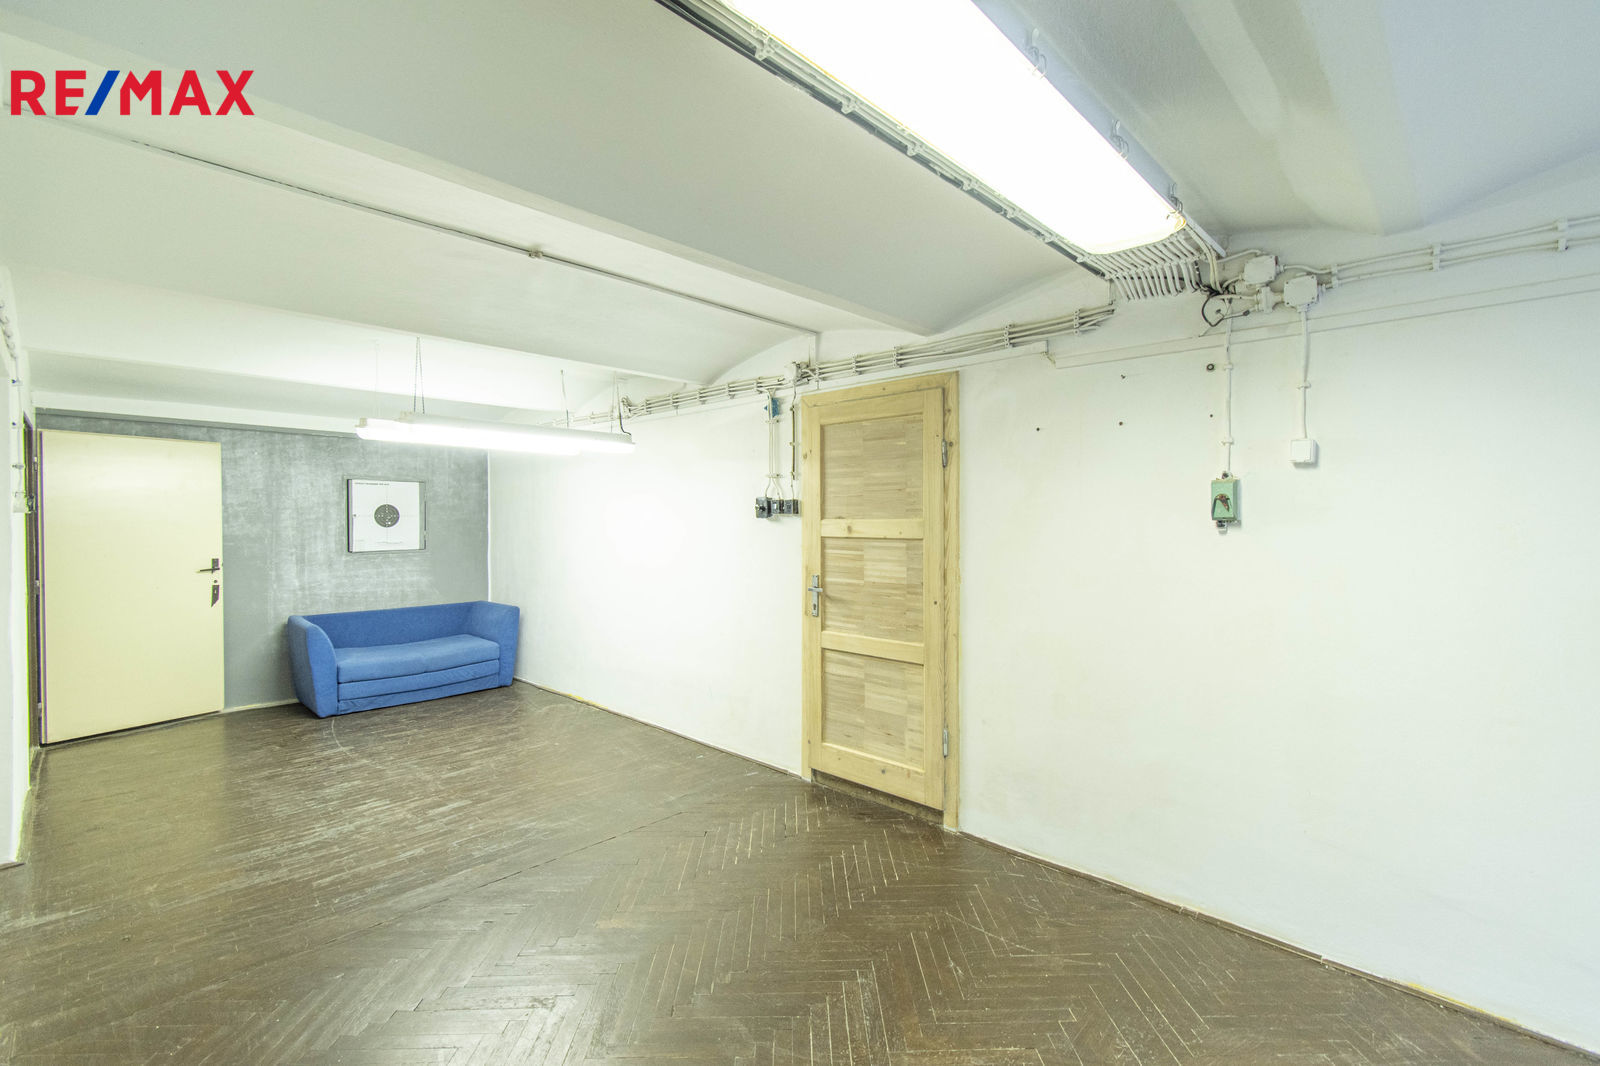 Pronájem komerčního prostoru (kanceláře), 40 m2, Moravský Krumlov